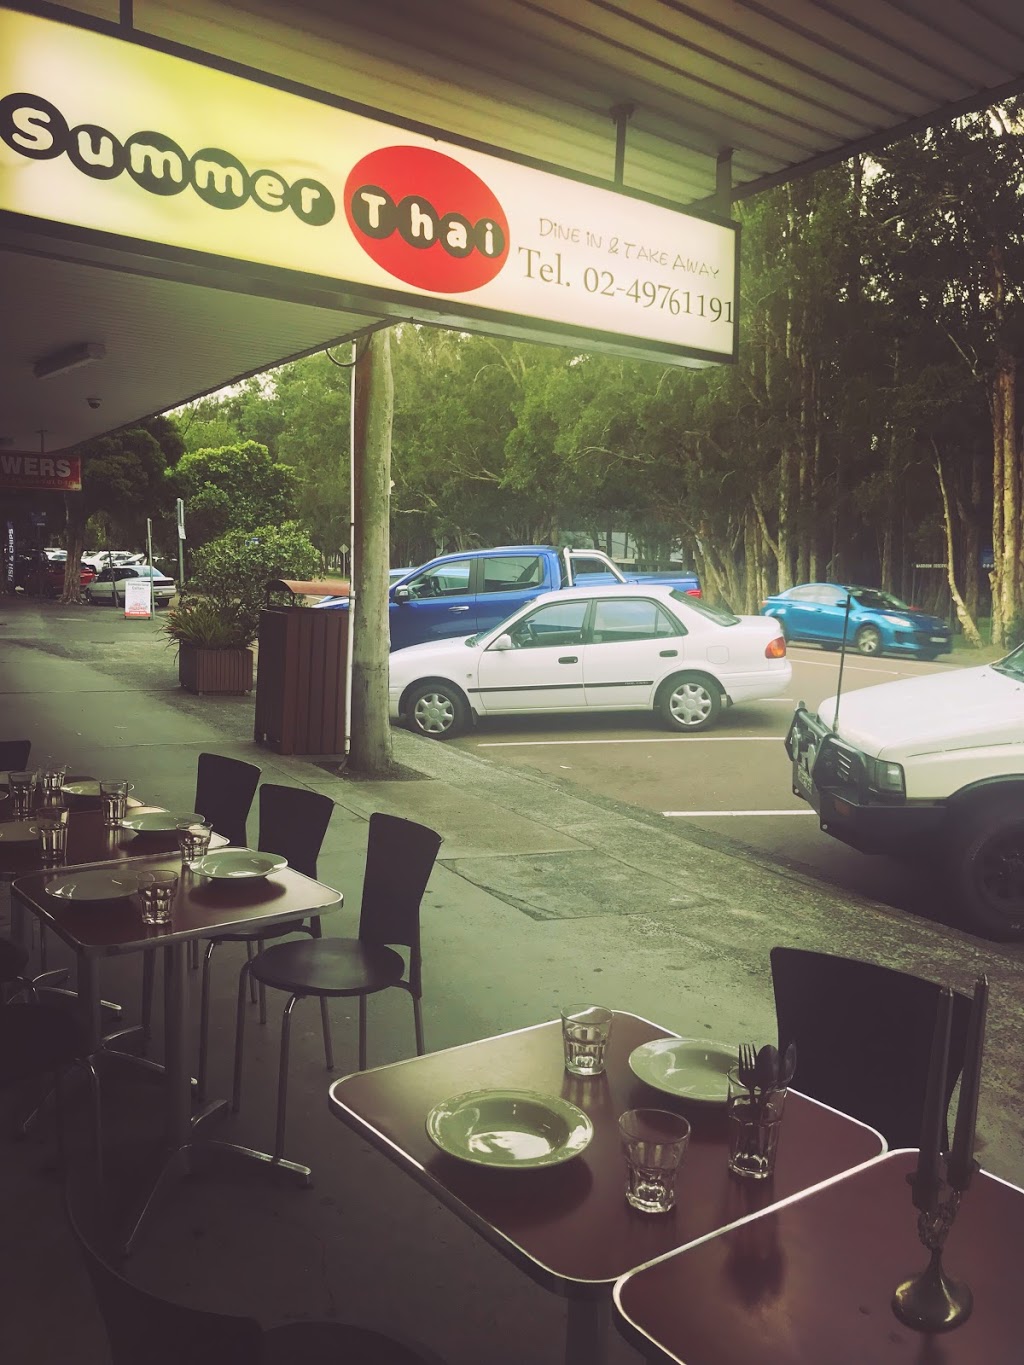 Summer Thai | restaurant | 60 Cams Blvd, Summerland Point NSW 2259, Australia | 0249761191 OR +61 2 4976 1191